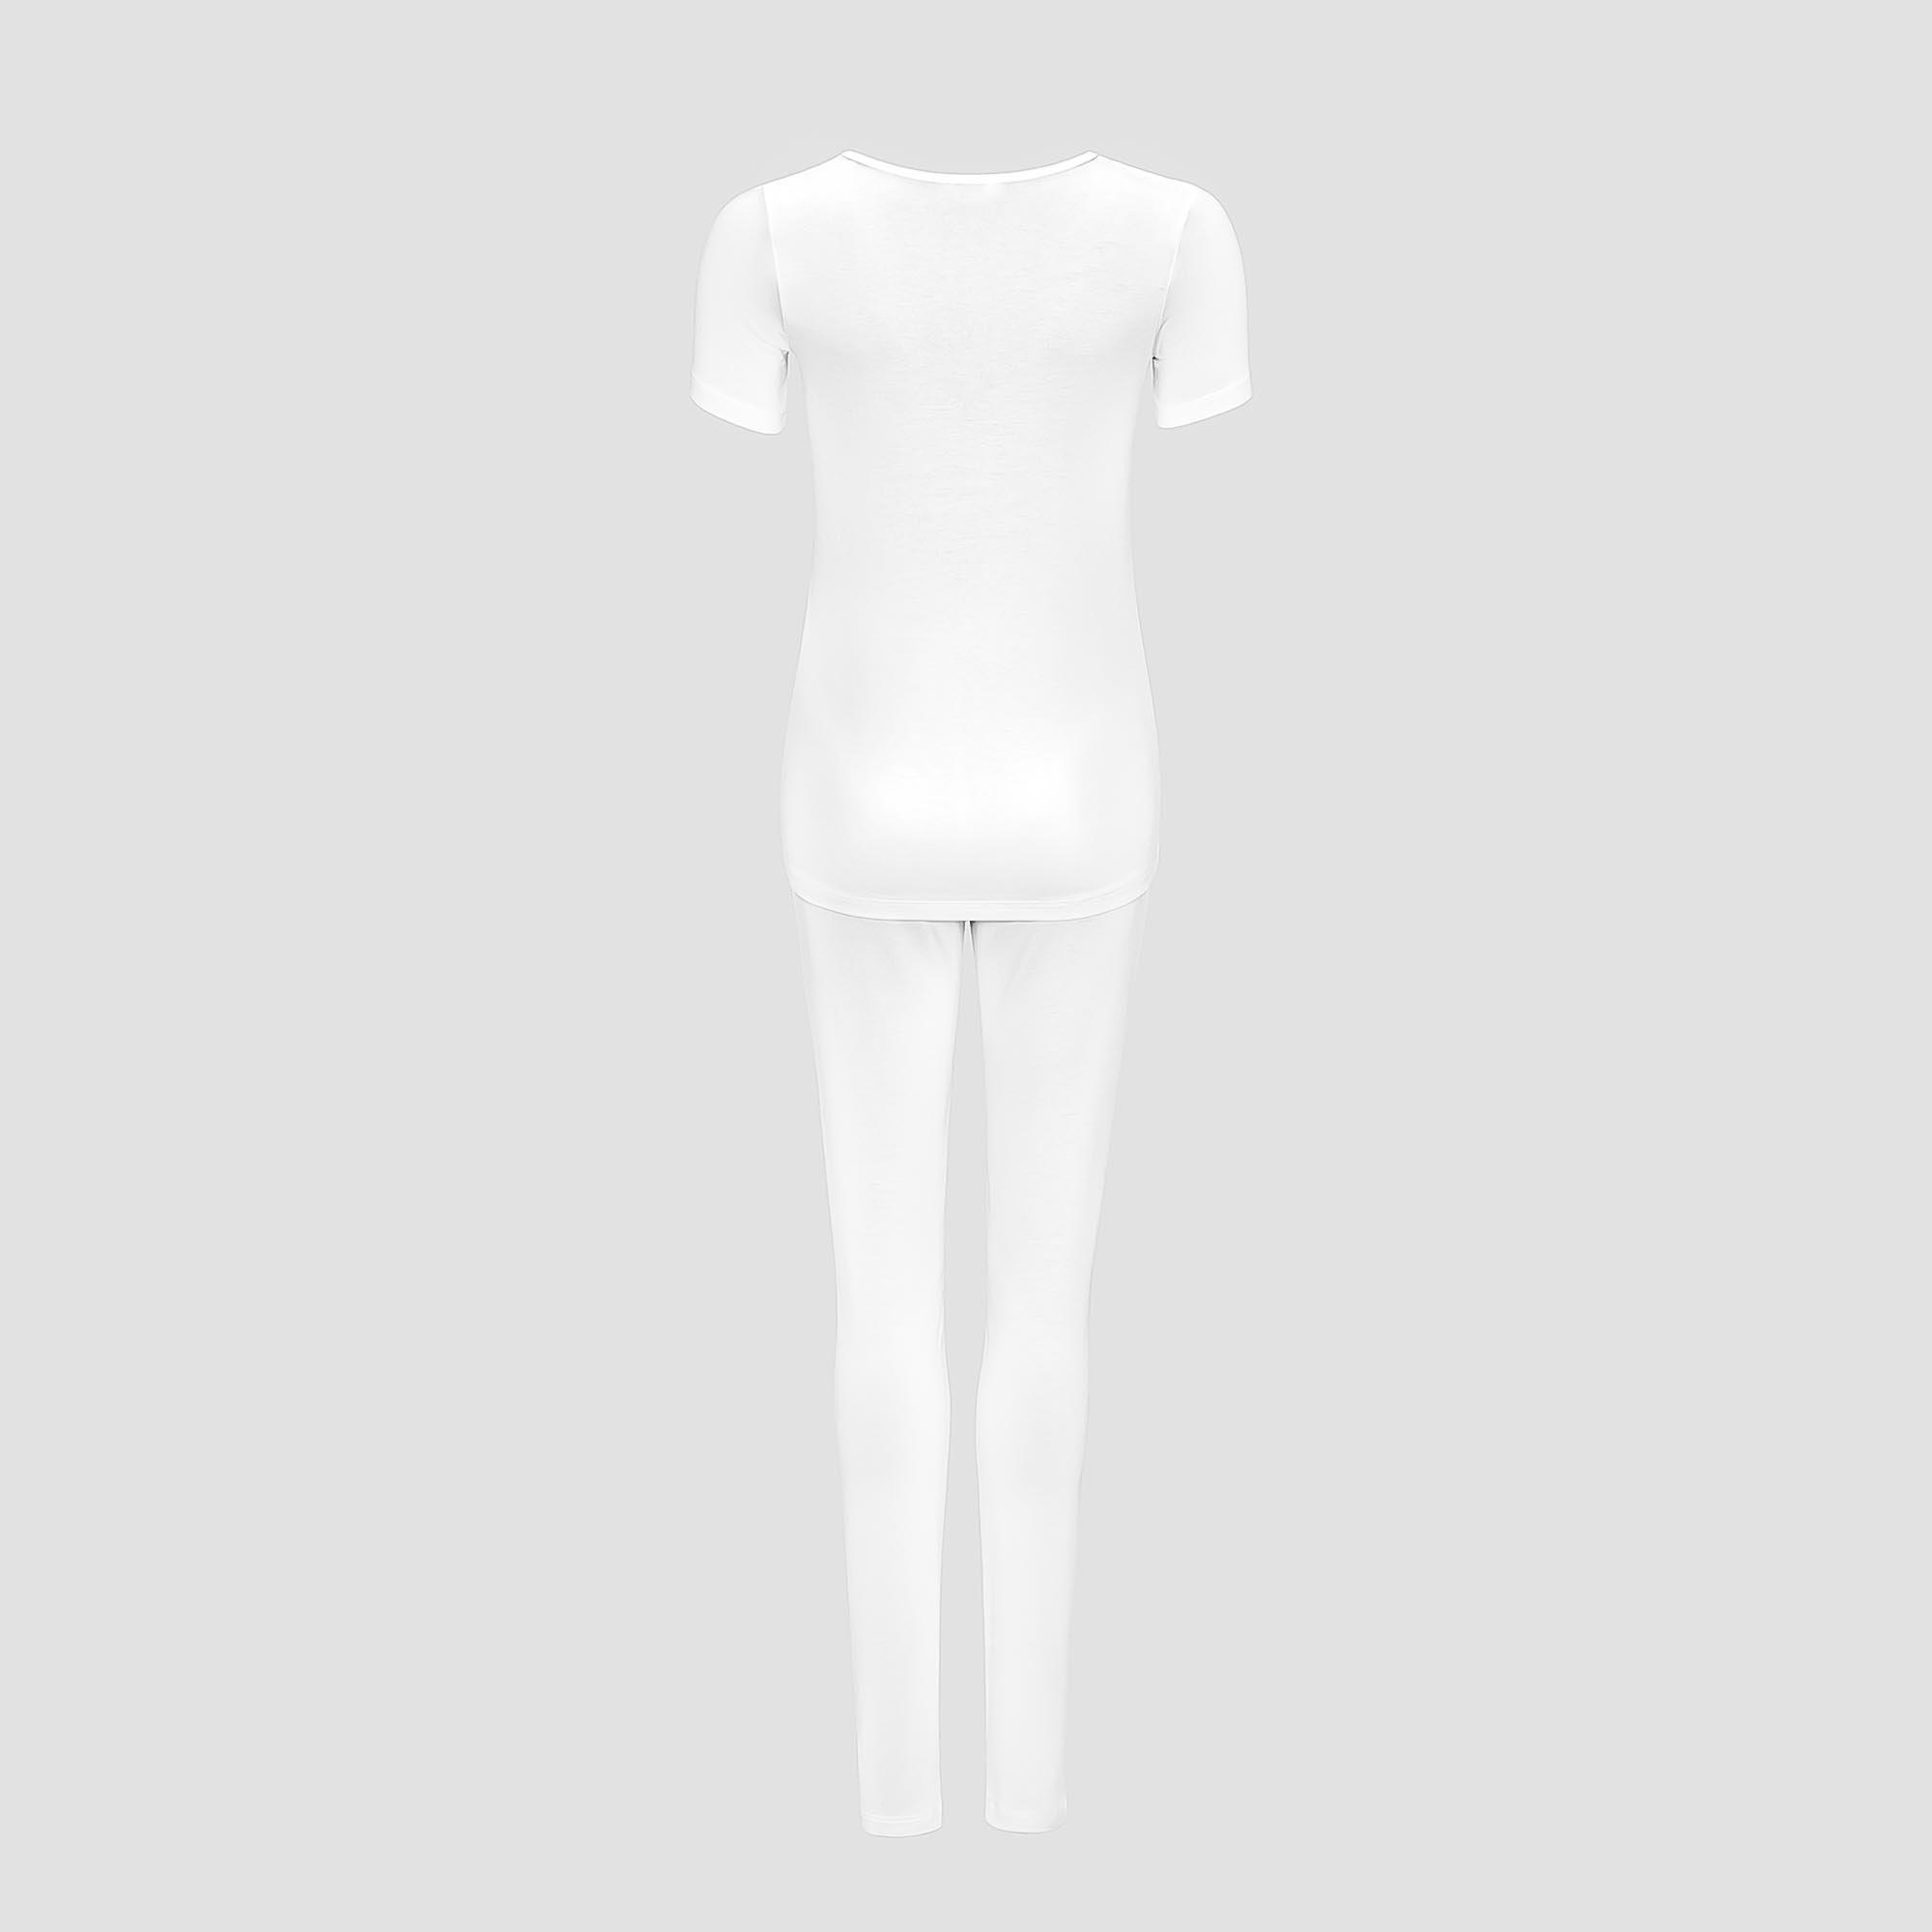 Пижама Togas Ингелла белая женская S(44) 2 предмета, цвет белый, размер S(44) - фото 3